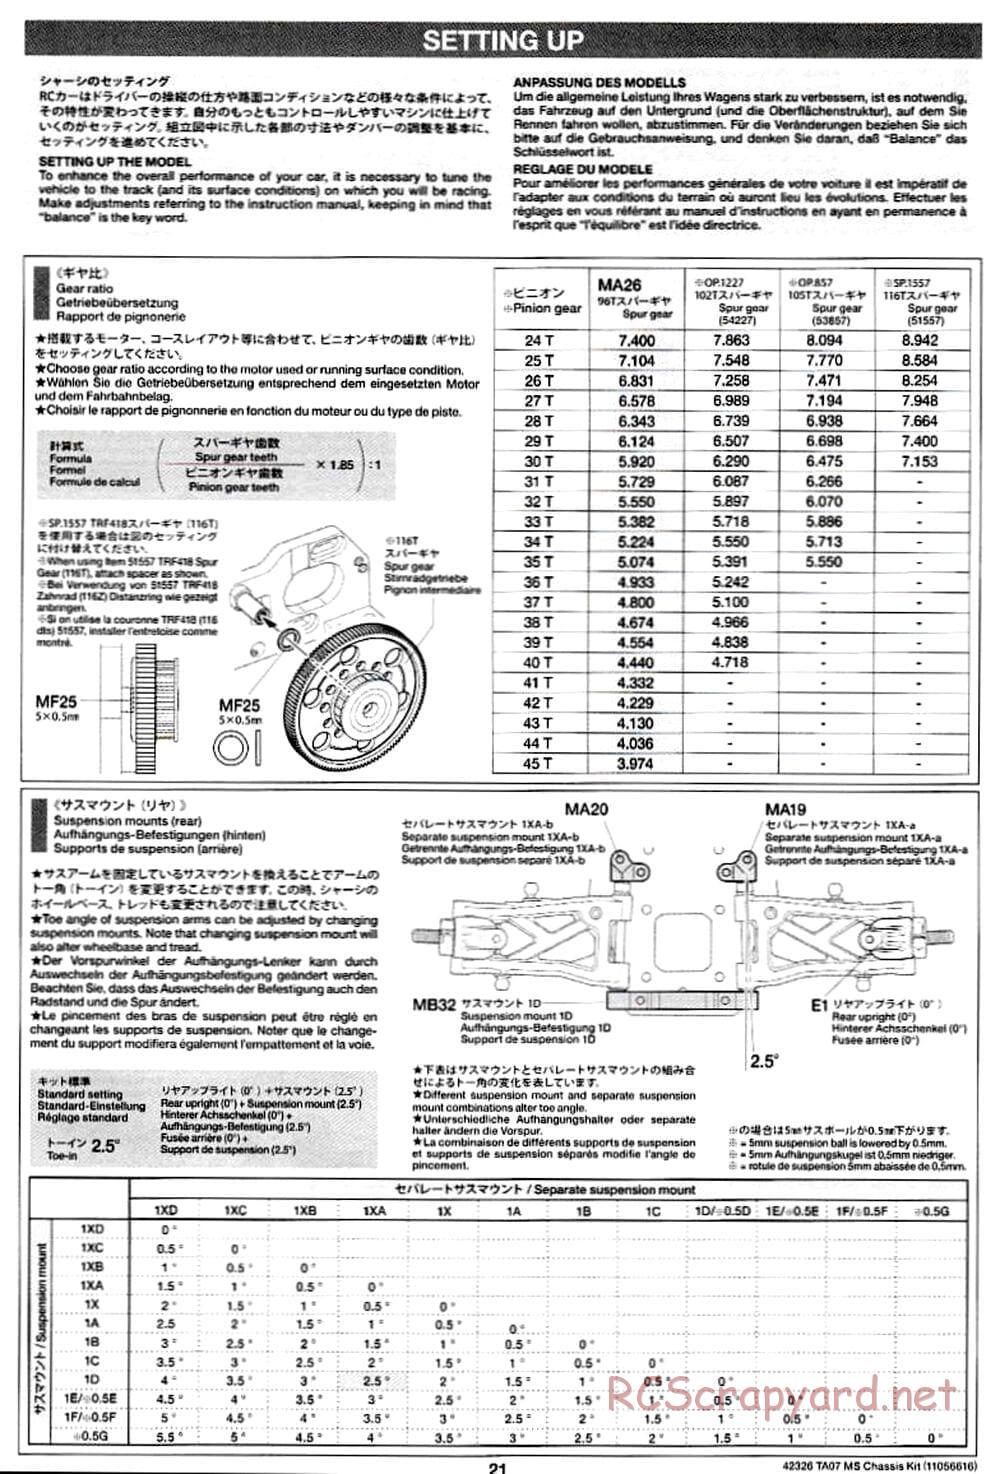 Tamiya - TA07 MS Chassis - Manual - Page 21